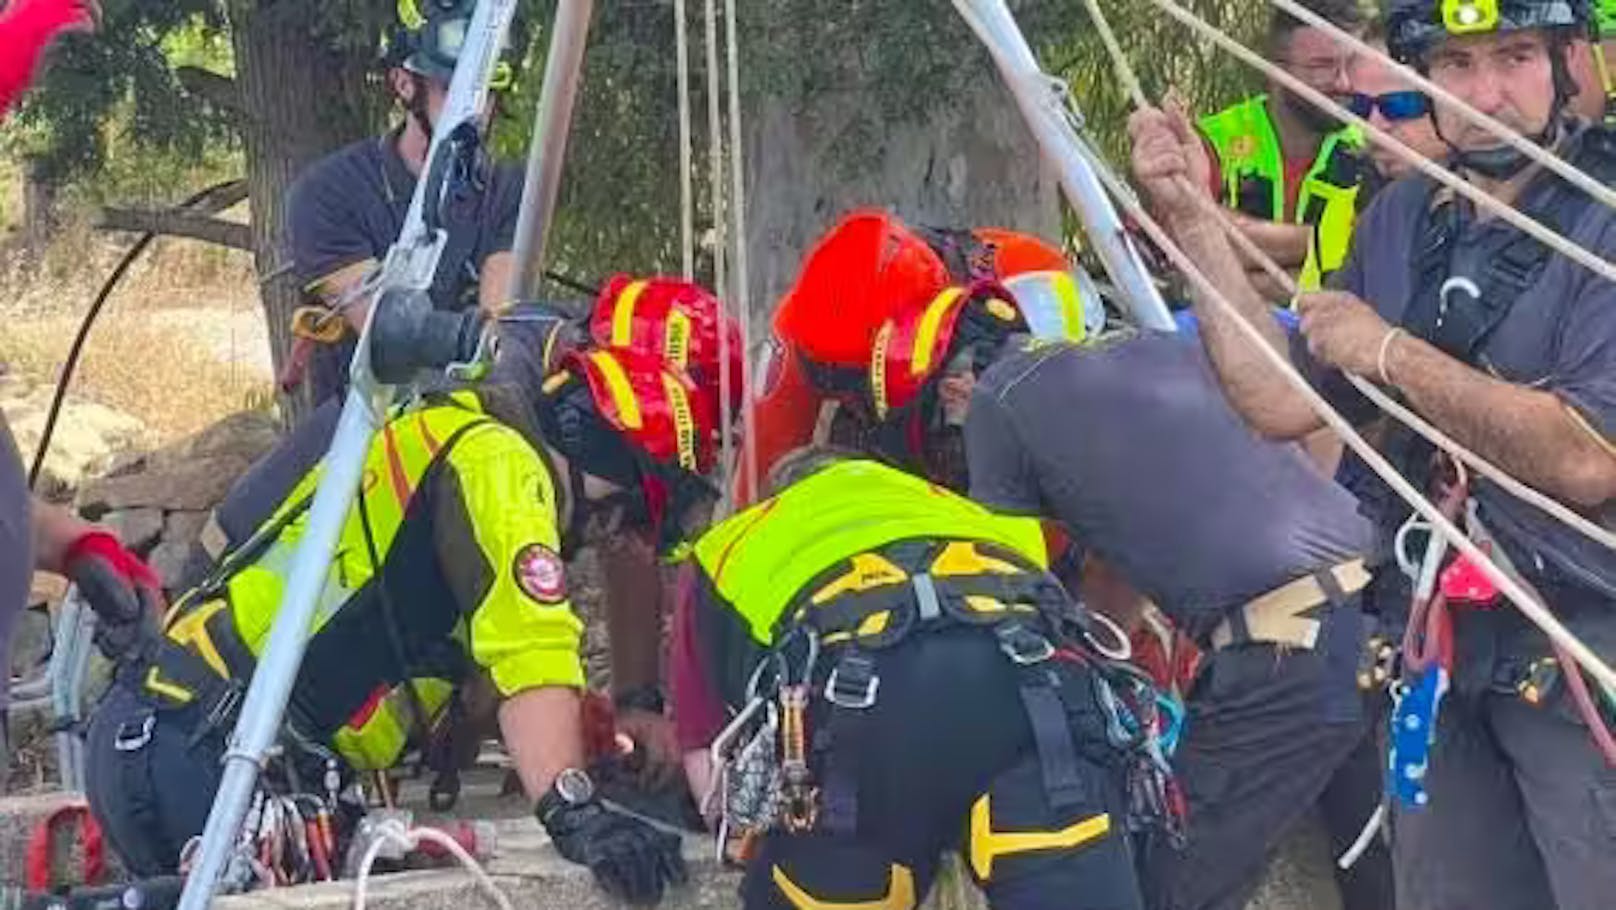 Eine Erzieherin ließ sich mit einem Seil in den Brunnen hinab. Unglücklicherweise blieb die 54-Jährige selbst stecken. Die alarmierten Rettungskräfte konnten die Frau befreien, doch für das Kind kam jede Hilfe zu spät.